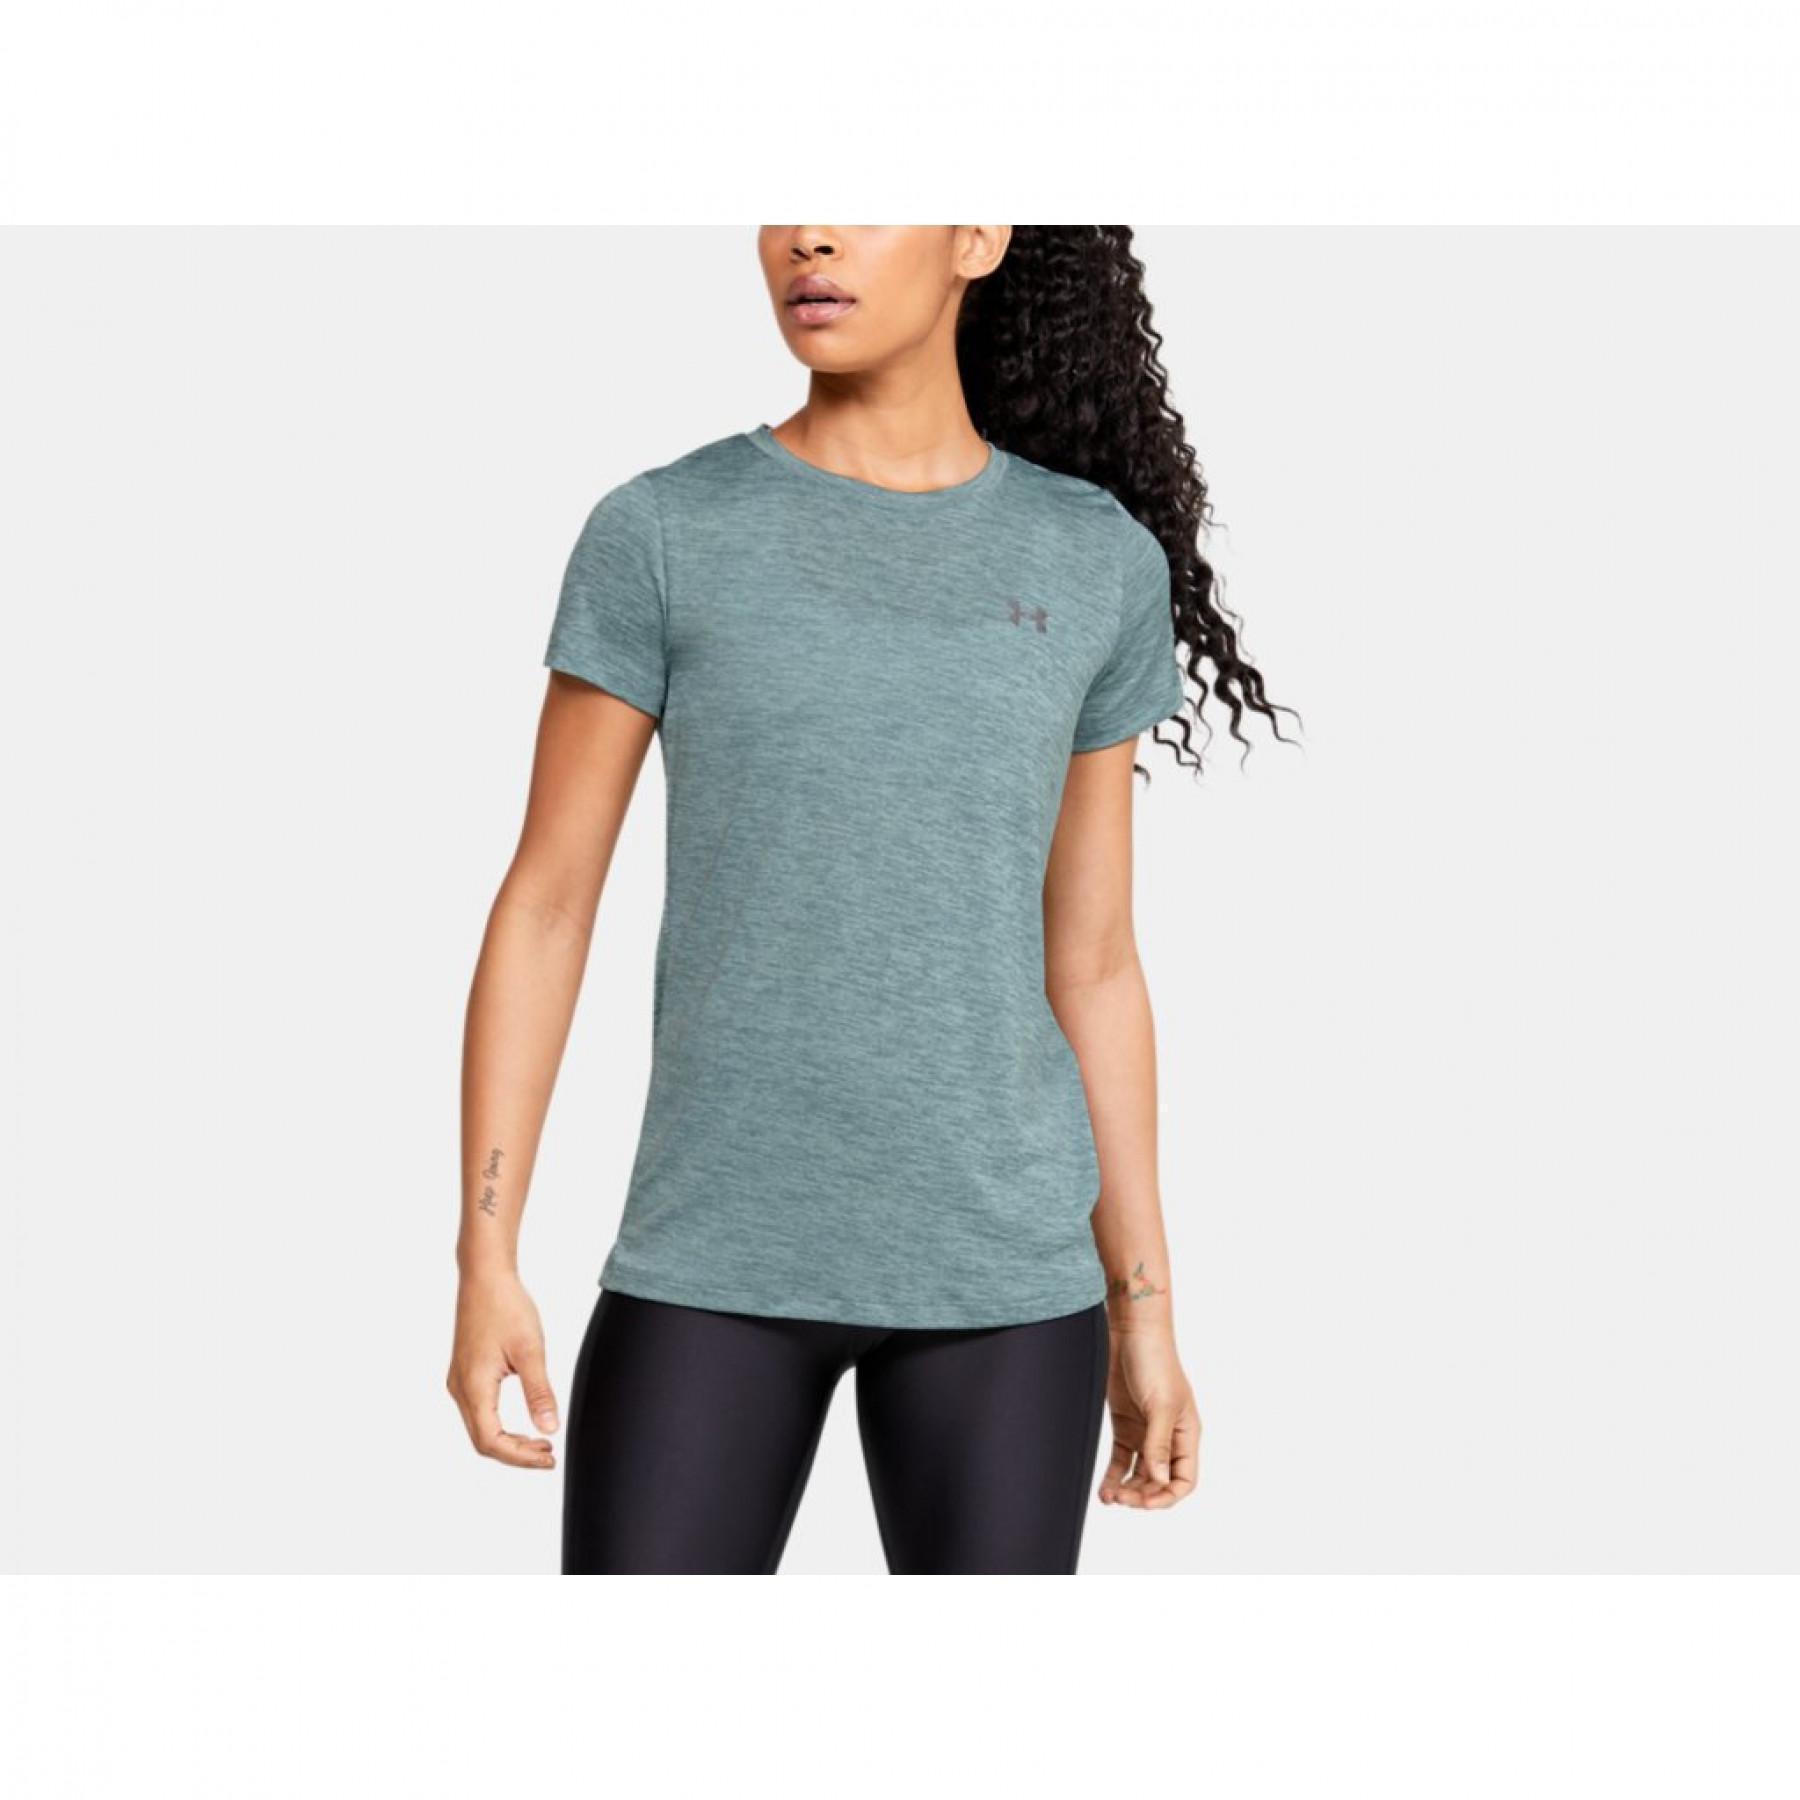 Under Armour Womens Tech Twist Short Sleeve T-Shirt - Green